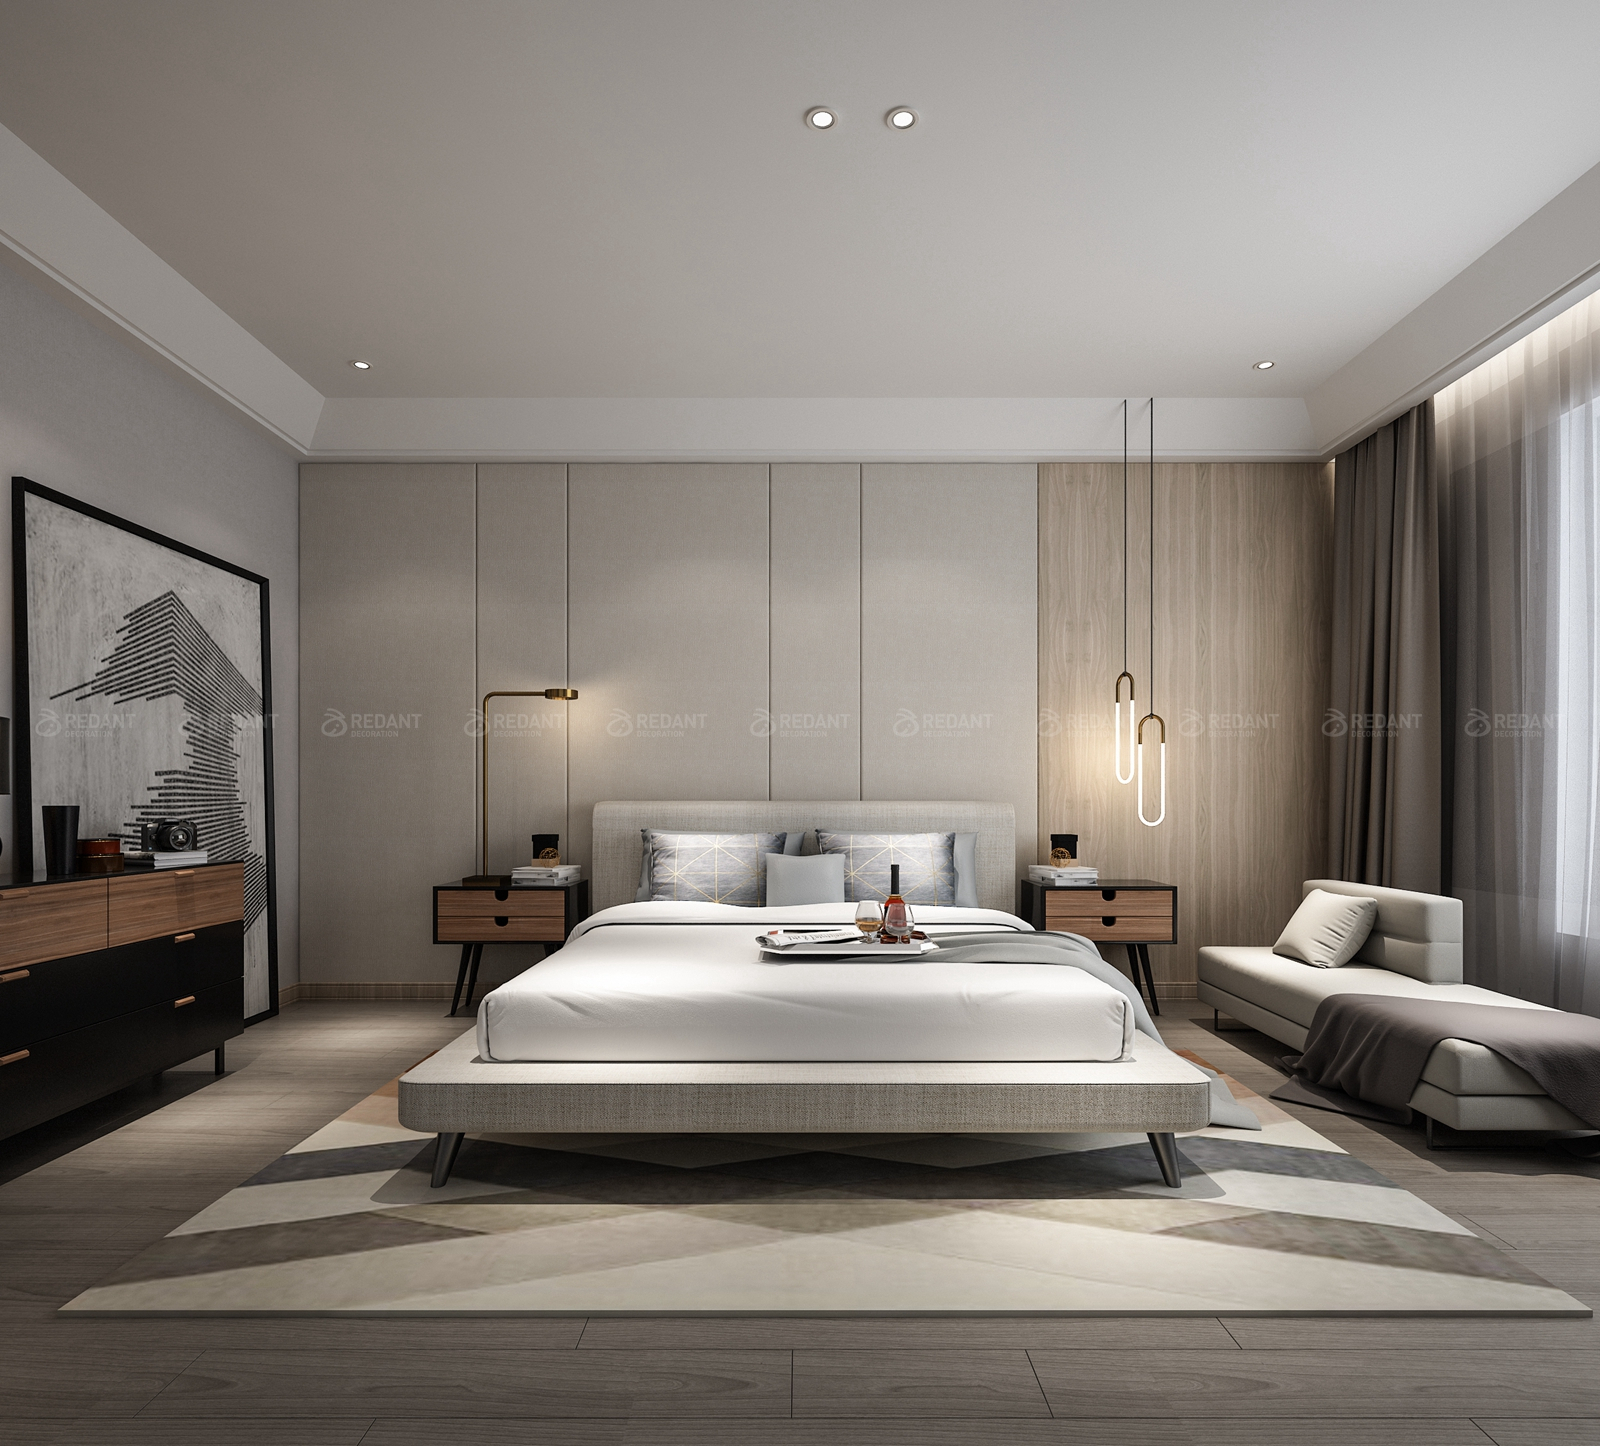 名君别院300㎡现代风格卧室次卧,以温润的墙布和硬包营造质朴却涵容